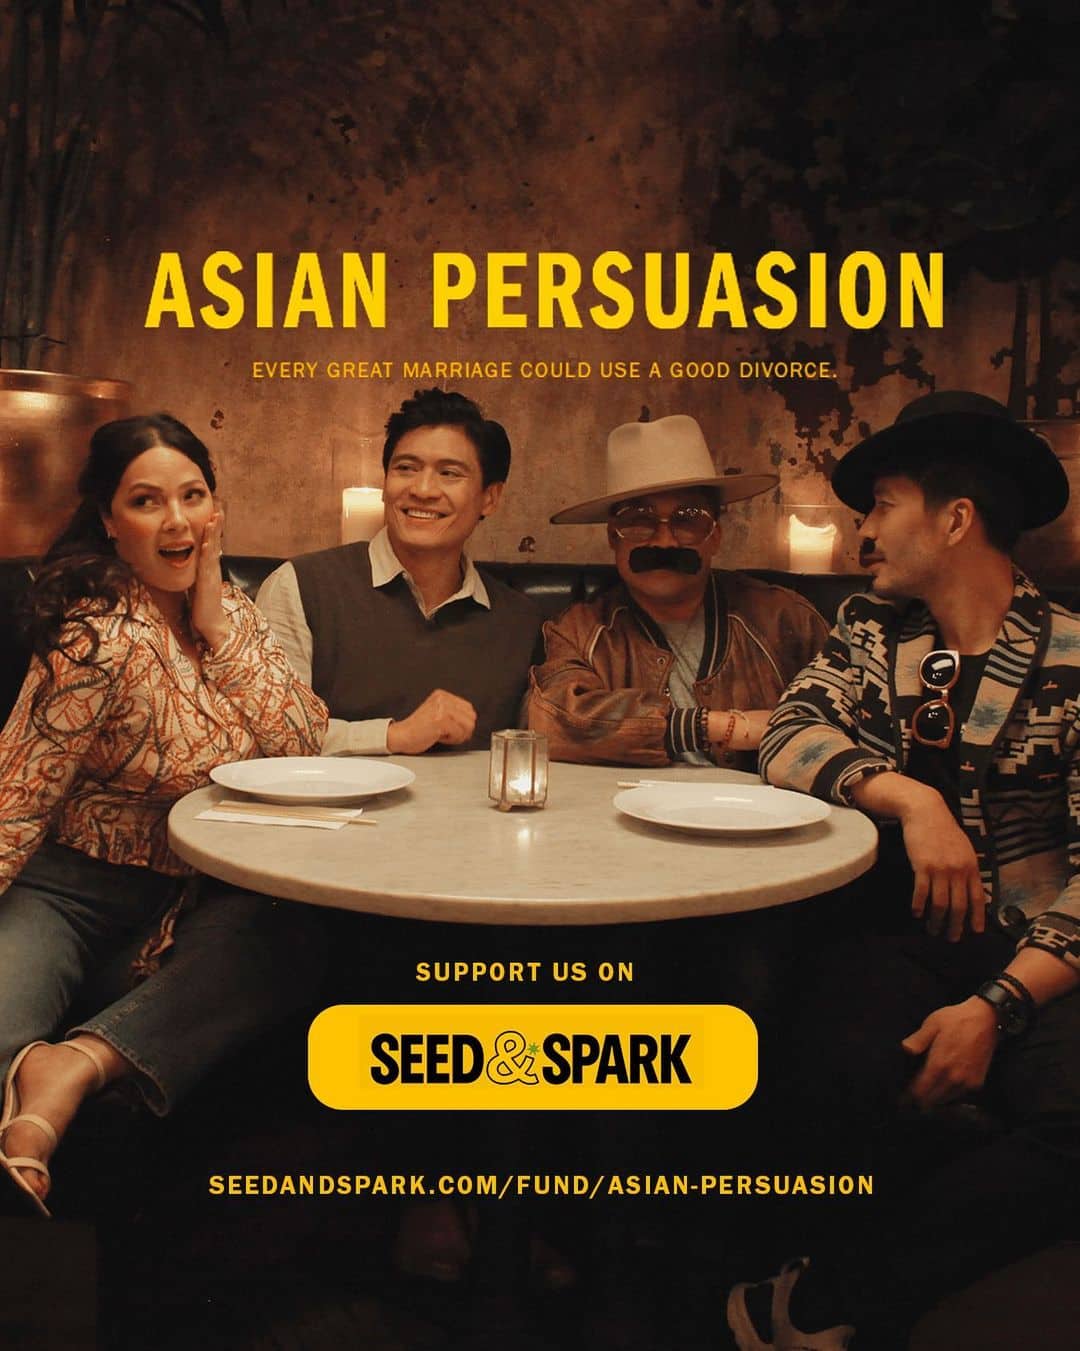 Asian Persuasion film fundraiser